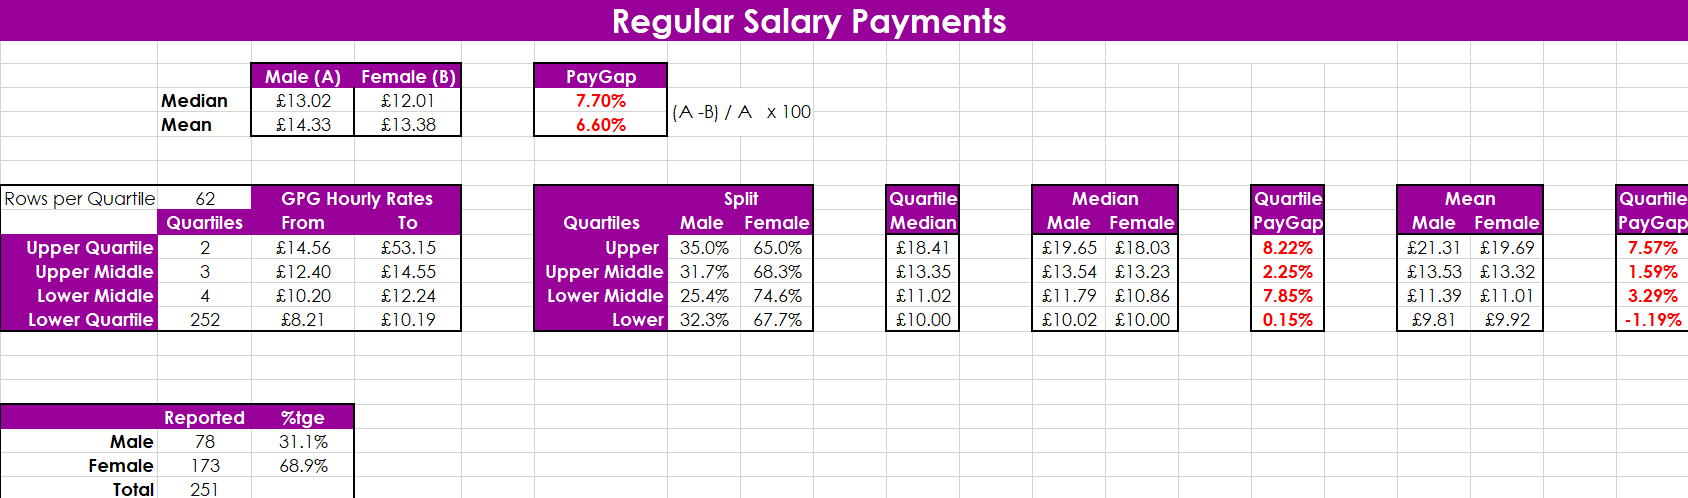 Regular Salary Payments Statistics